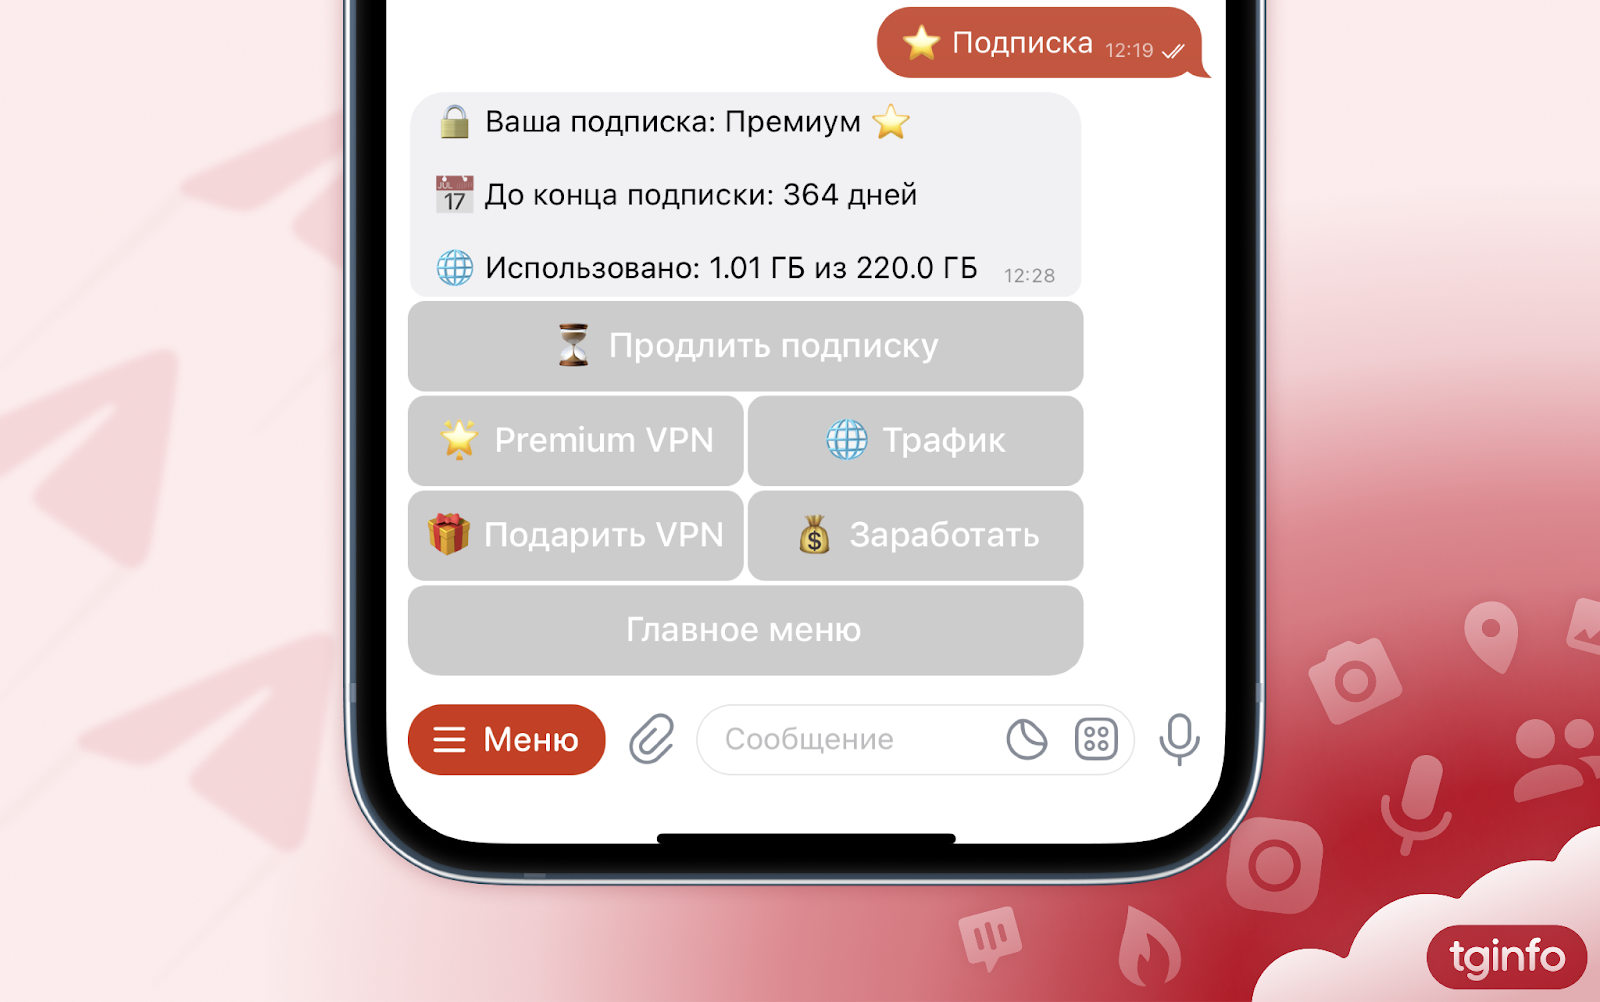 Обновить телеграмм до последней версии на андроид бесплатно русском с официального сайта фото 51